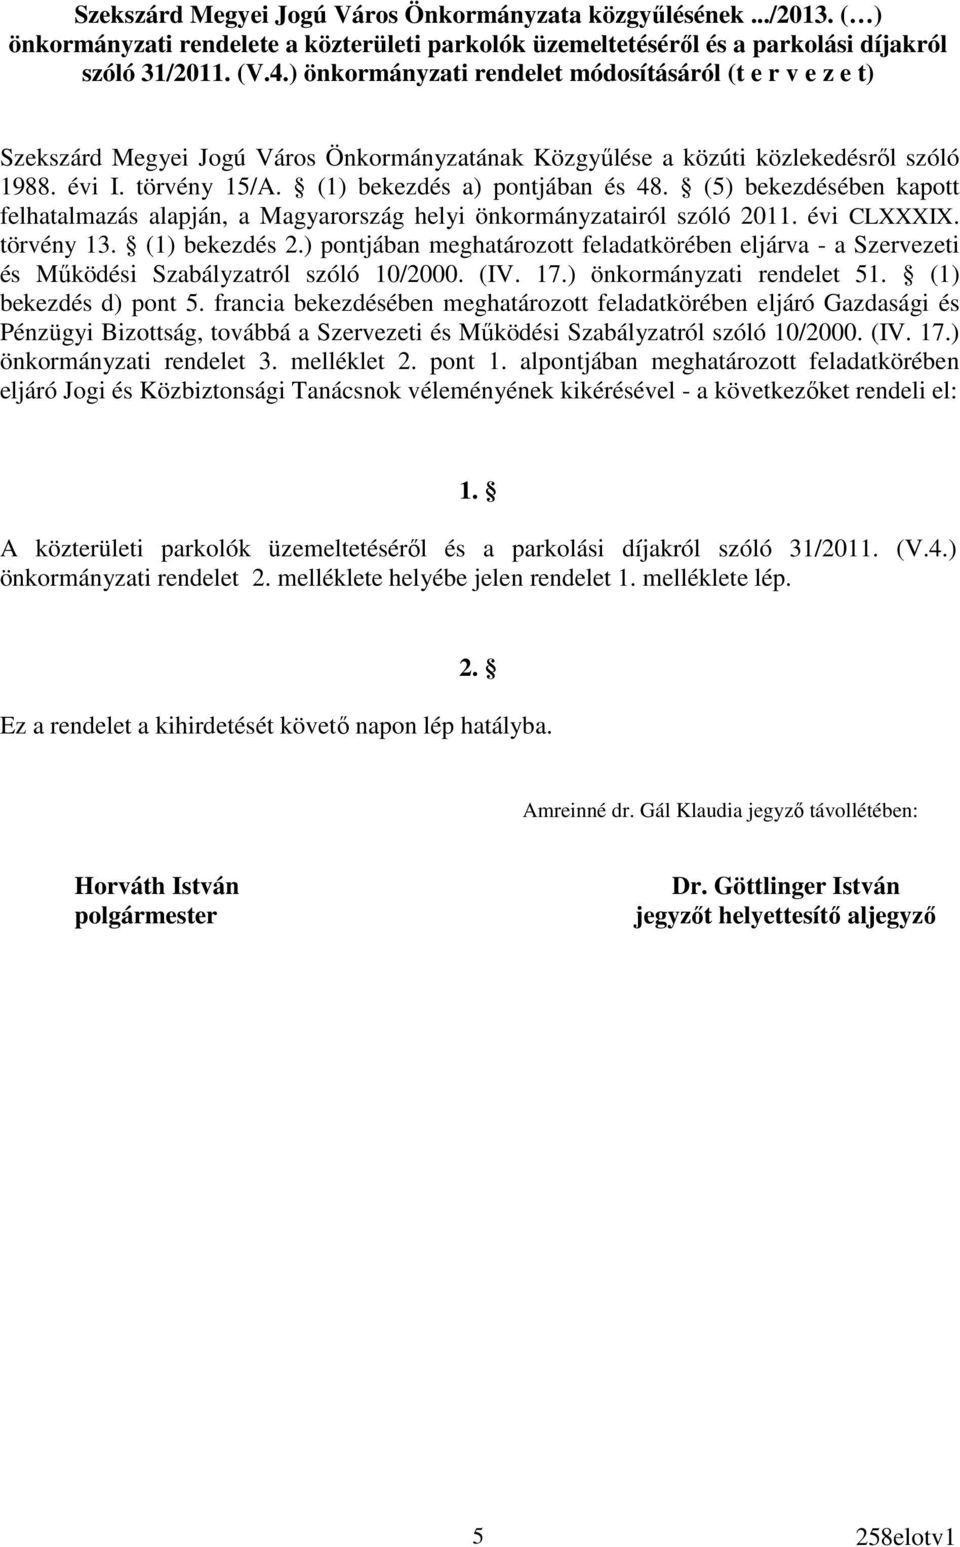 (1) bekezdés a) pontjában és 48. (5) bekezdésében kapott felhatalmazás alapján, a Magyarország helyi önkormányzatairól szóló 2011. évi CLXXXIX. törvény 13. (1) bekezdés 2.